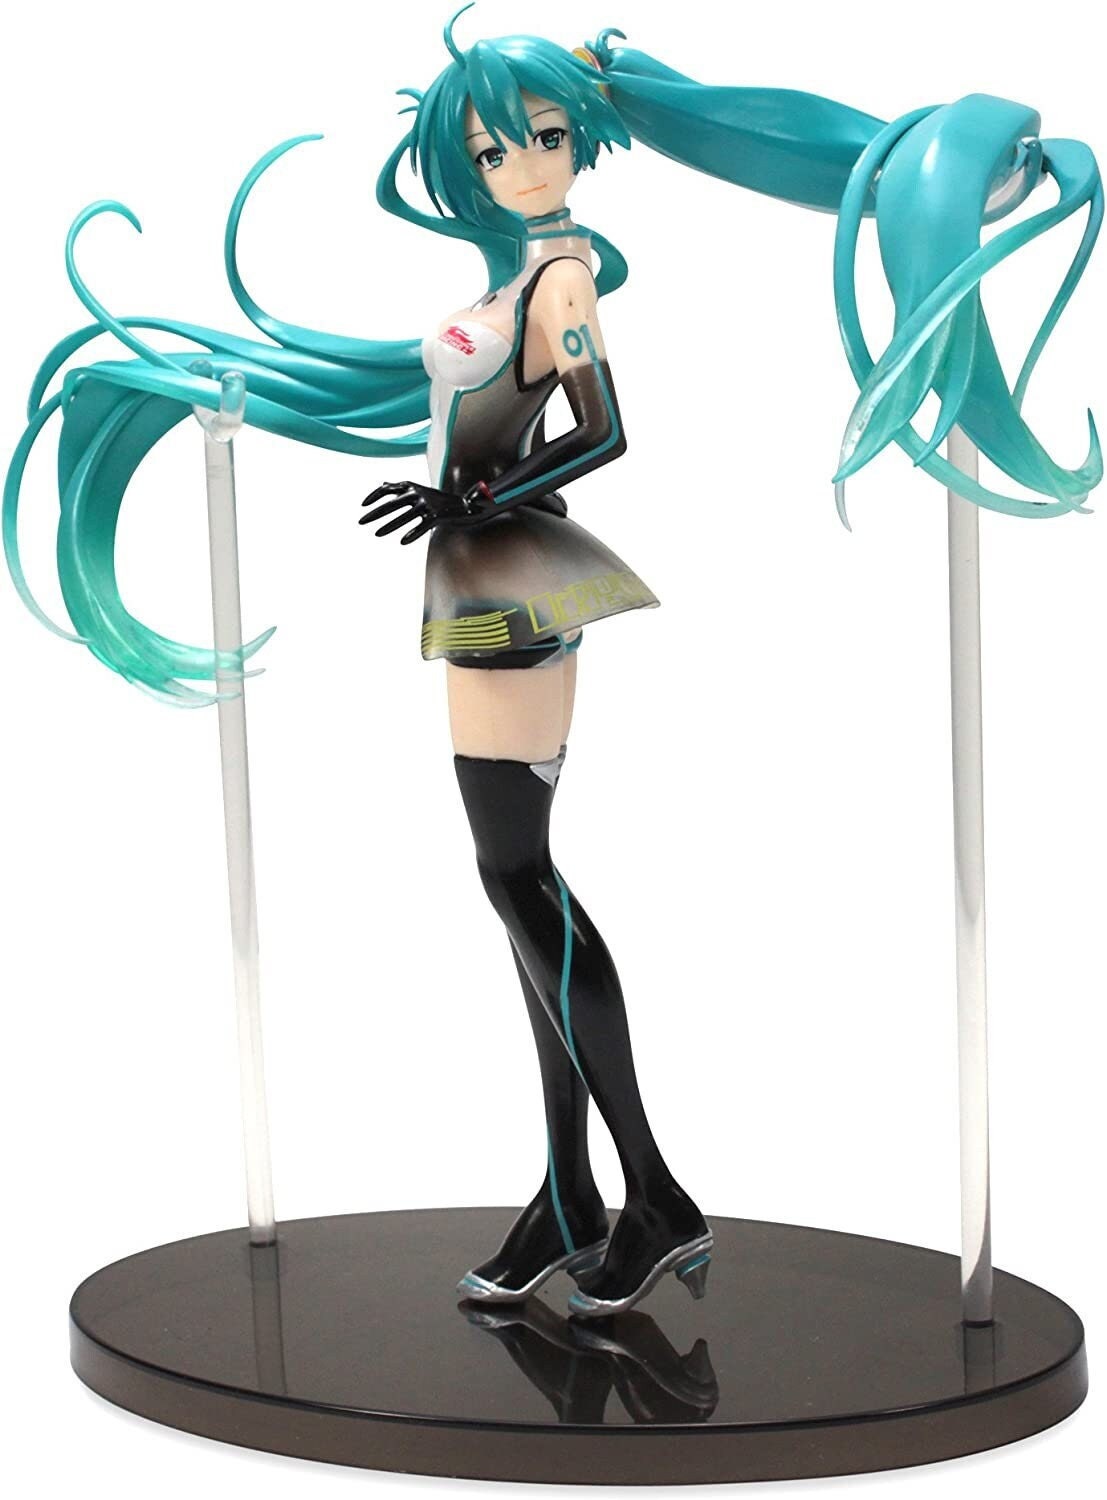 WTB: Megurine Luka Vocaloid vignetteum figure by Sega + KH, FFVII